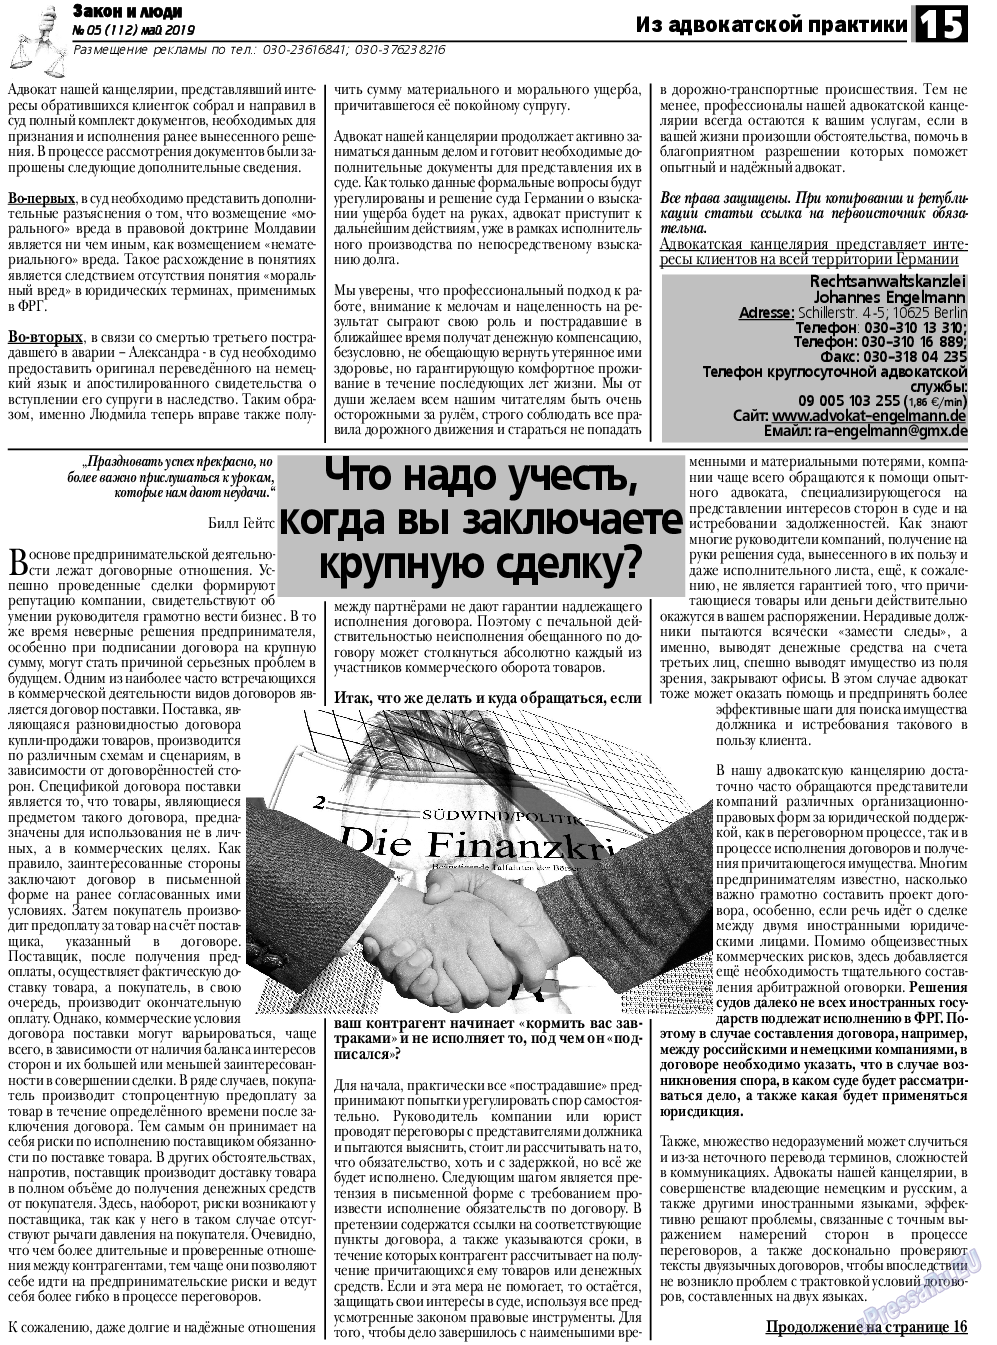 Закон и люди, газета. 2019 №5 стр.15